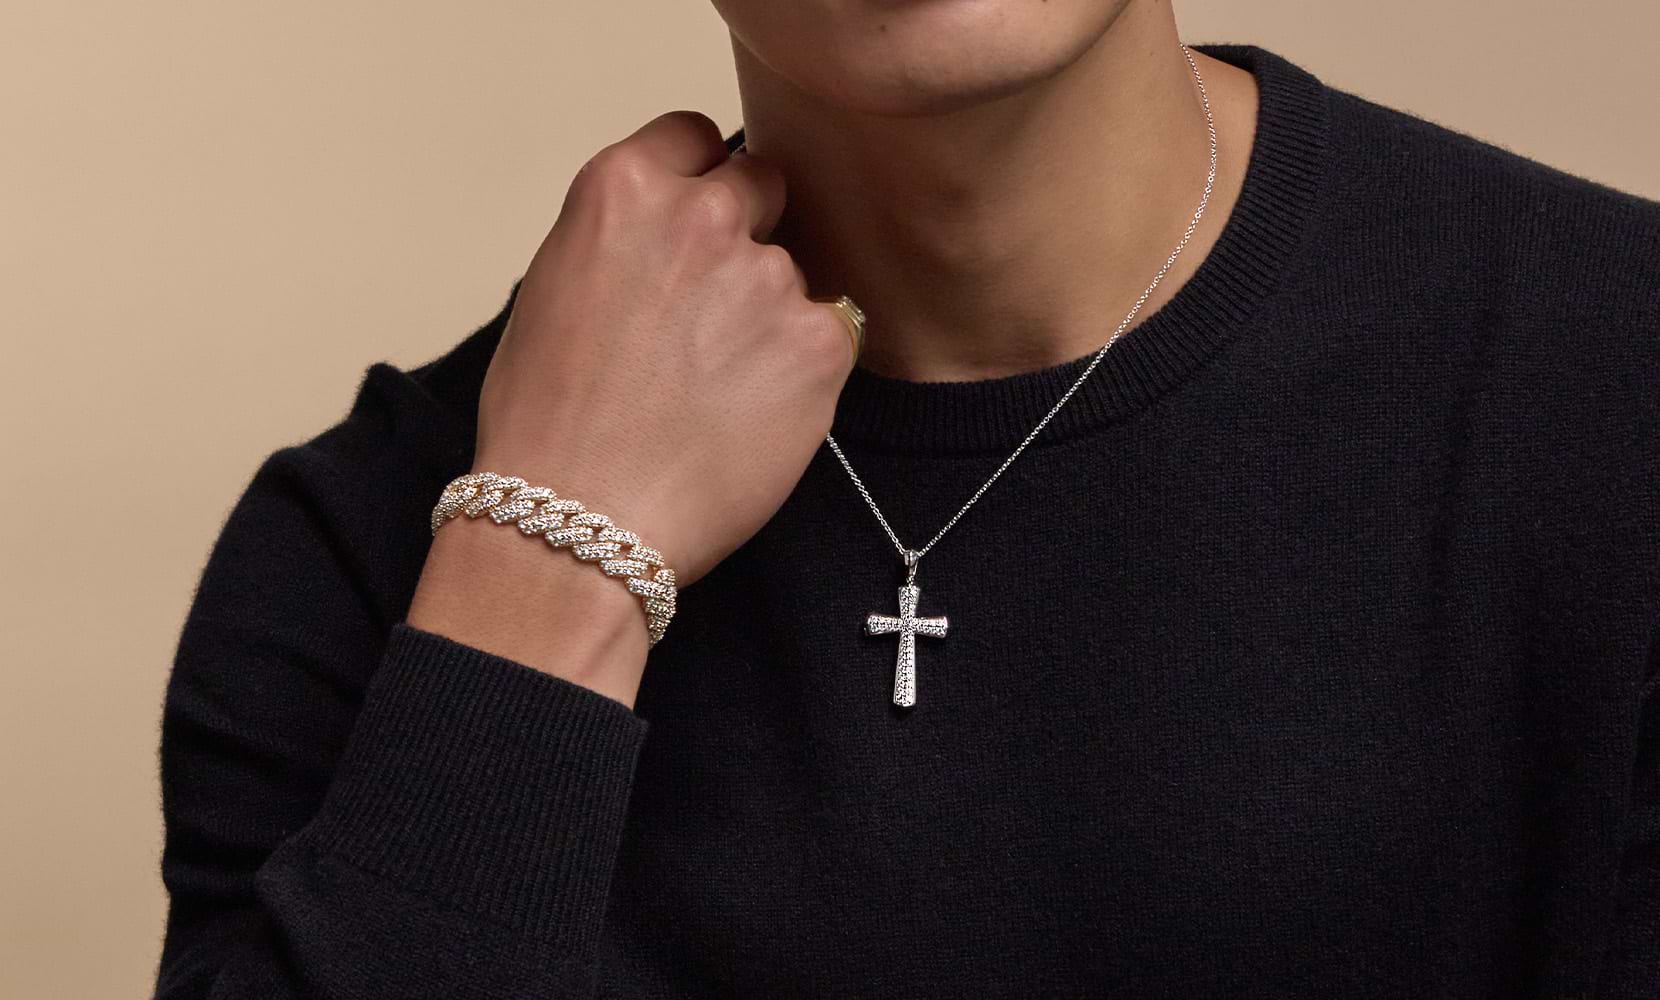 Bild des Halses und der Brust eines männlichen Models mit einem Herrenarmband und einer Halskette mit Diamantkreuz